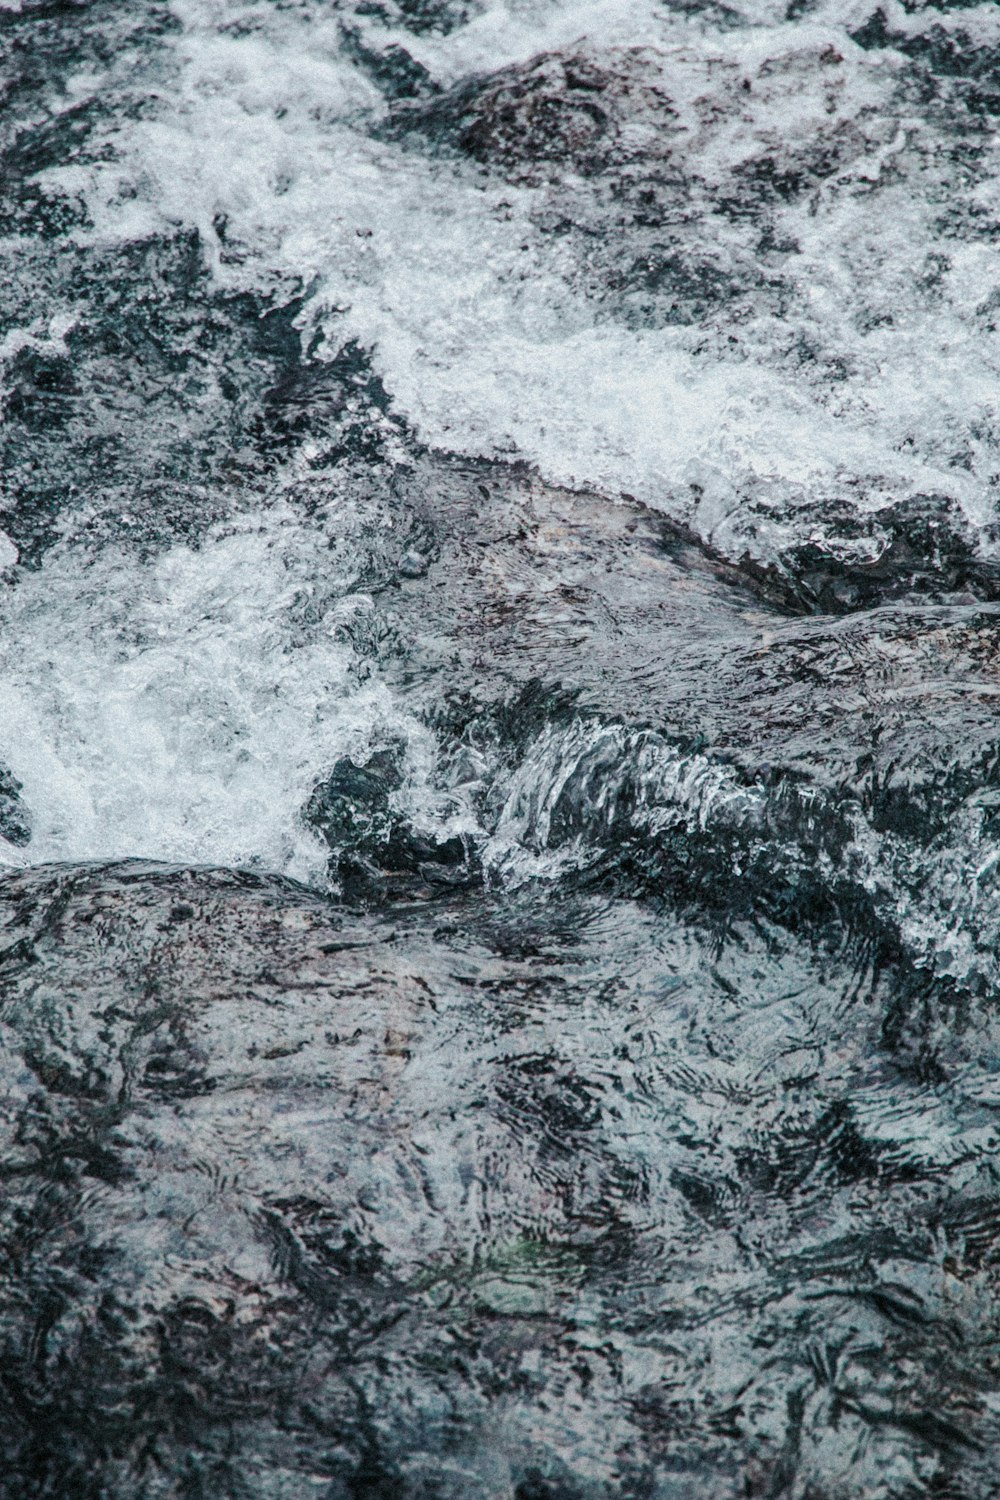 water waves hitting black rock